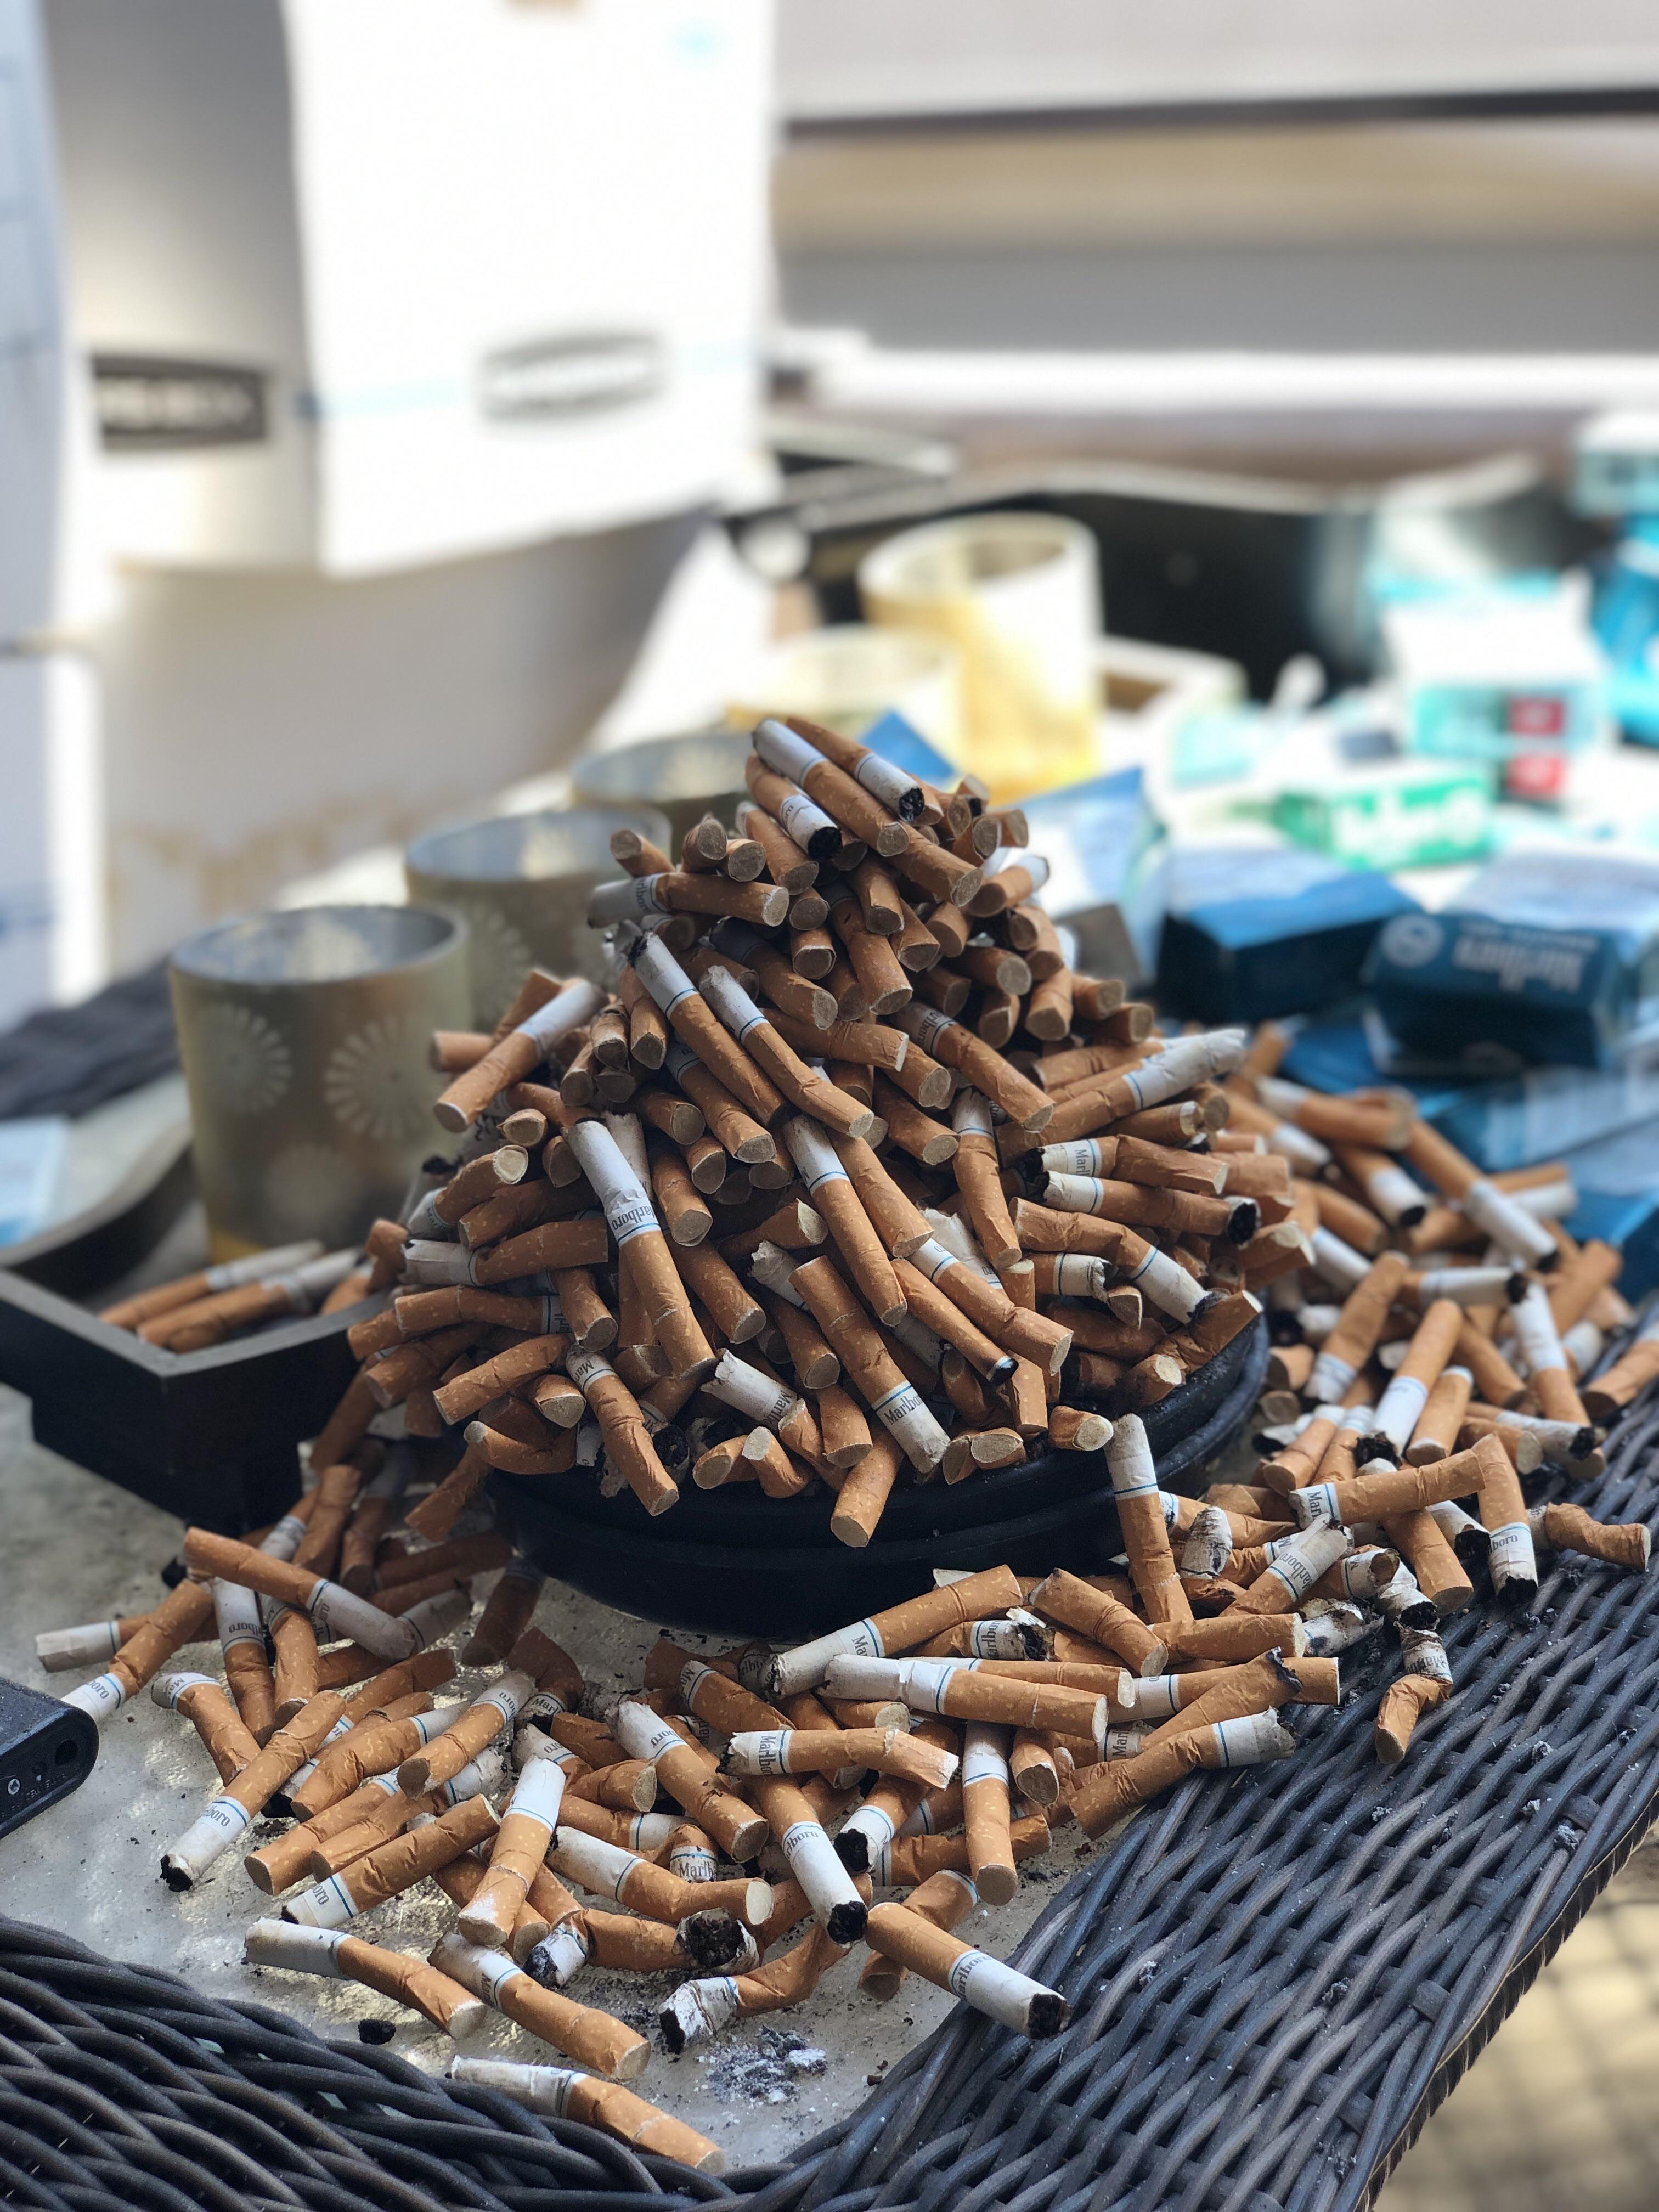 massive pile of cigarettes